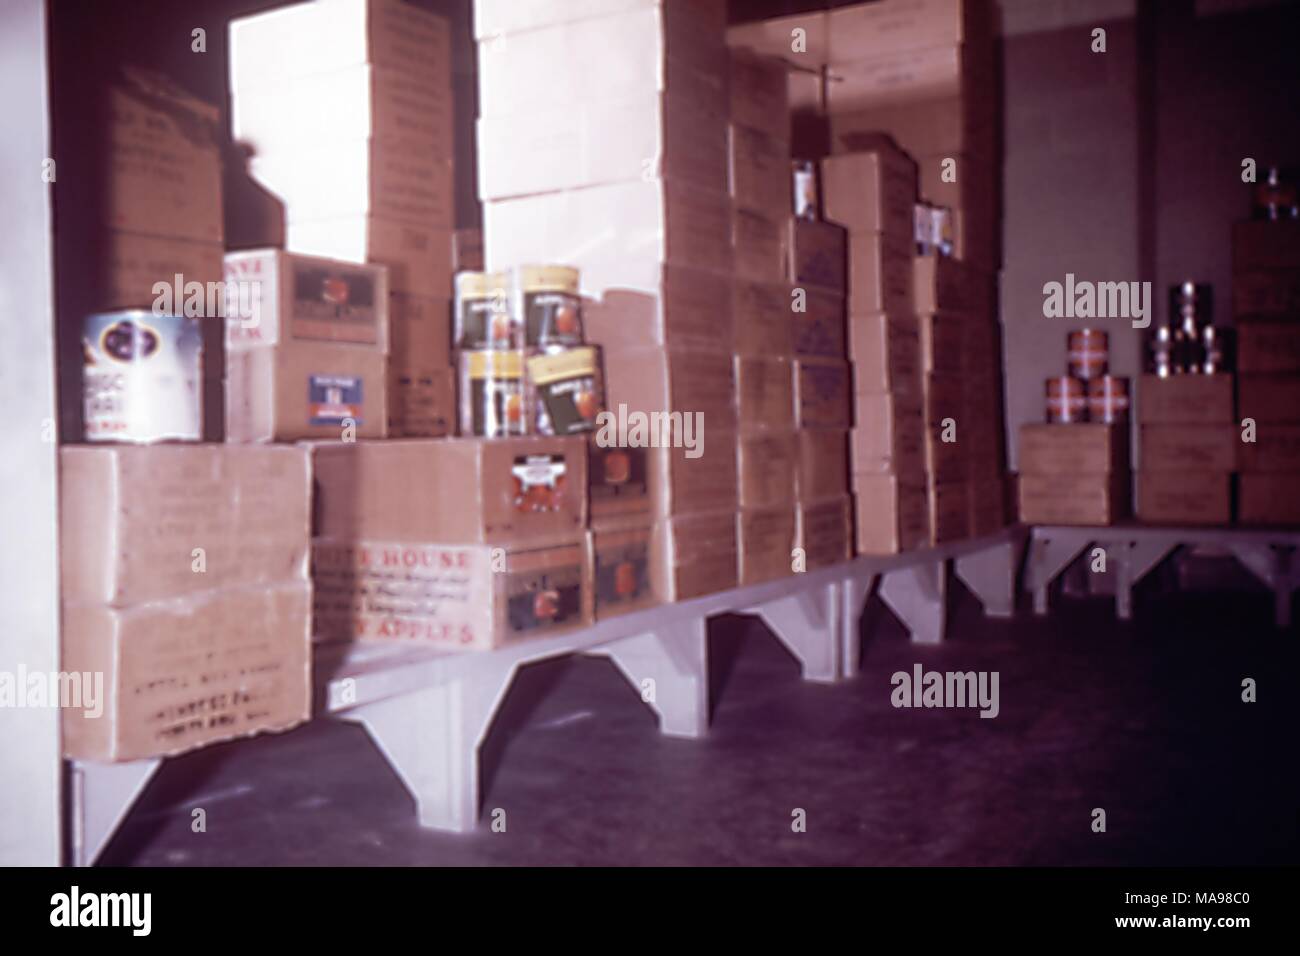 Photo d'une zone de stockage alimentaire intérieure à un camp de travail des travailleurs migrants, avec étagères bordées de boîtes en carton brun et de grandes boîtes de conserves de pommes, 1975. Image courtoisie CDC. () Banque D'Images